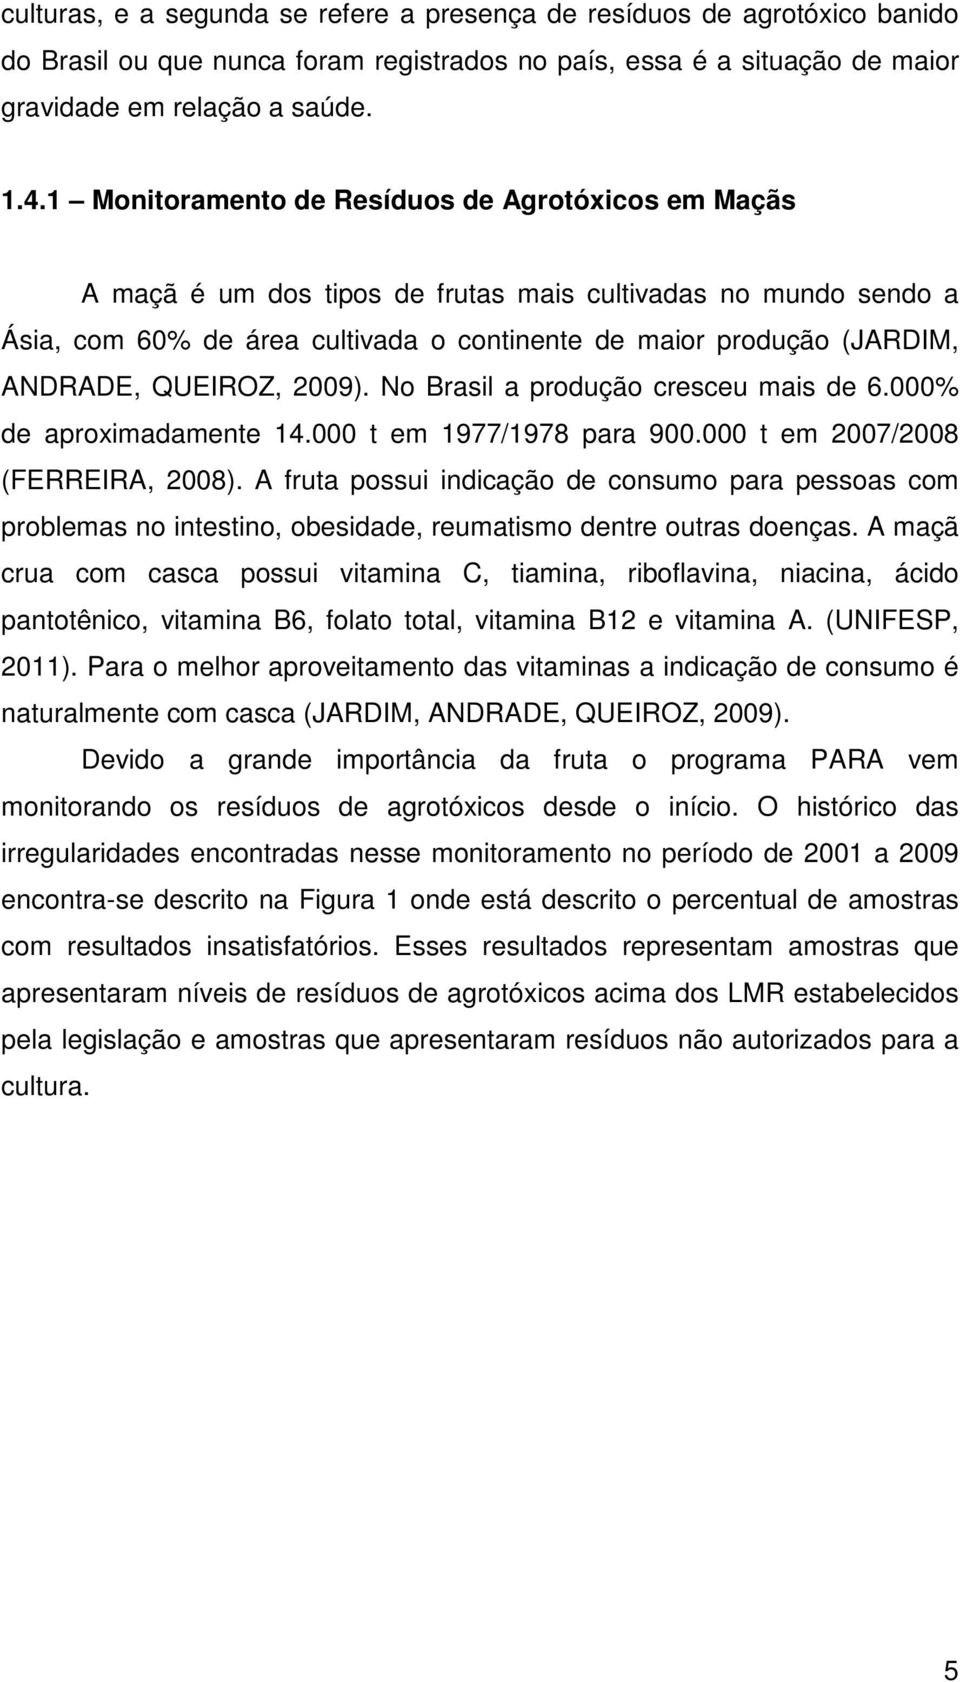 QUEIROZ, 2009). No Brasil a produção cresceu mais de 6.000% de aproximadamente 14.000 t em 1977/1978 para 900.000 t em 2007/2008 (FERREIRA, 2008).